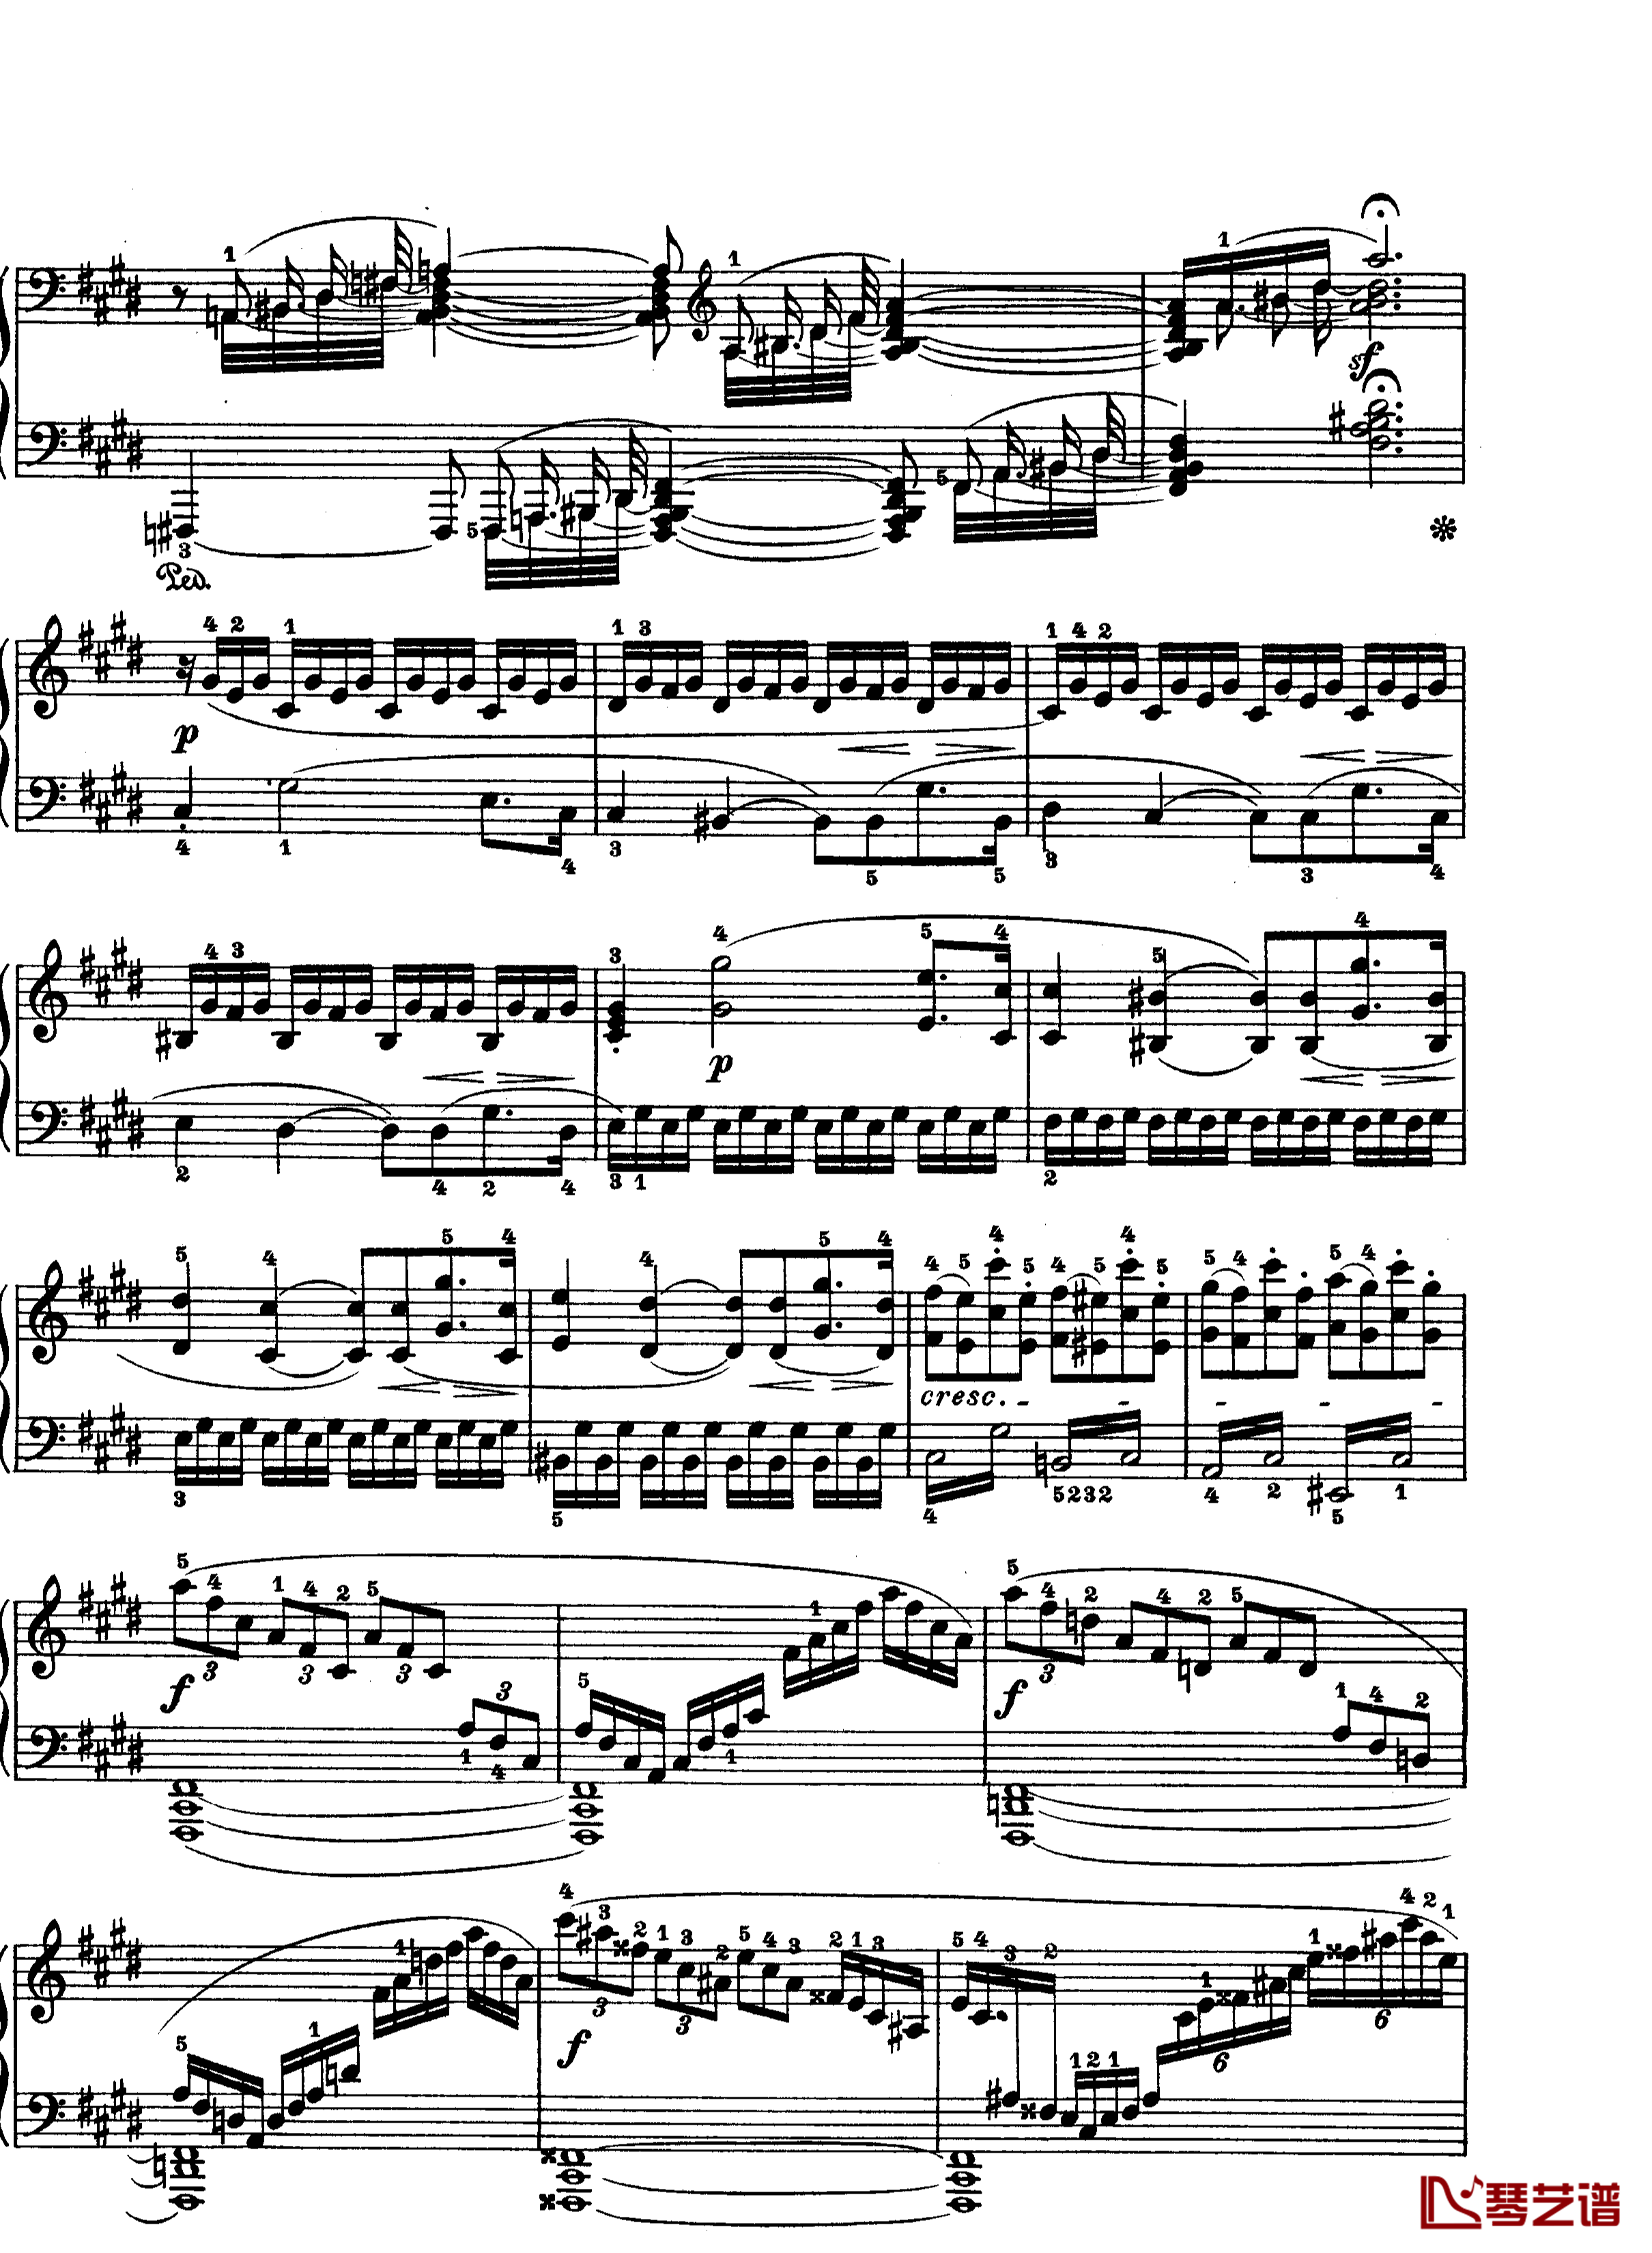 月光曲钢琴谱-第十四钢琴奏鸣曲-Op.27 No.2-贝多芬-beethoven13